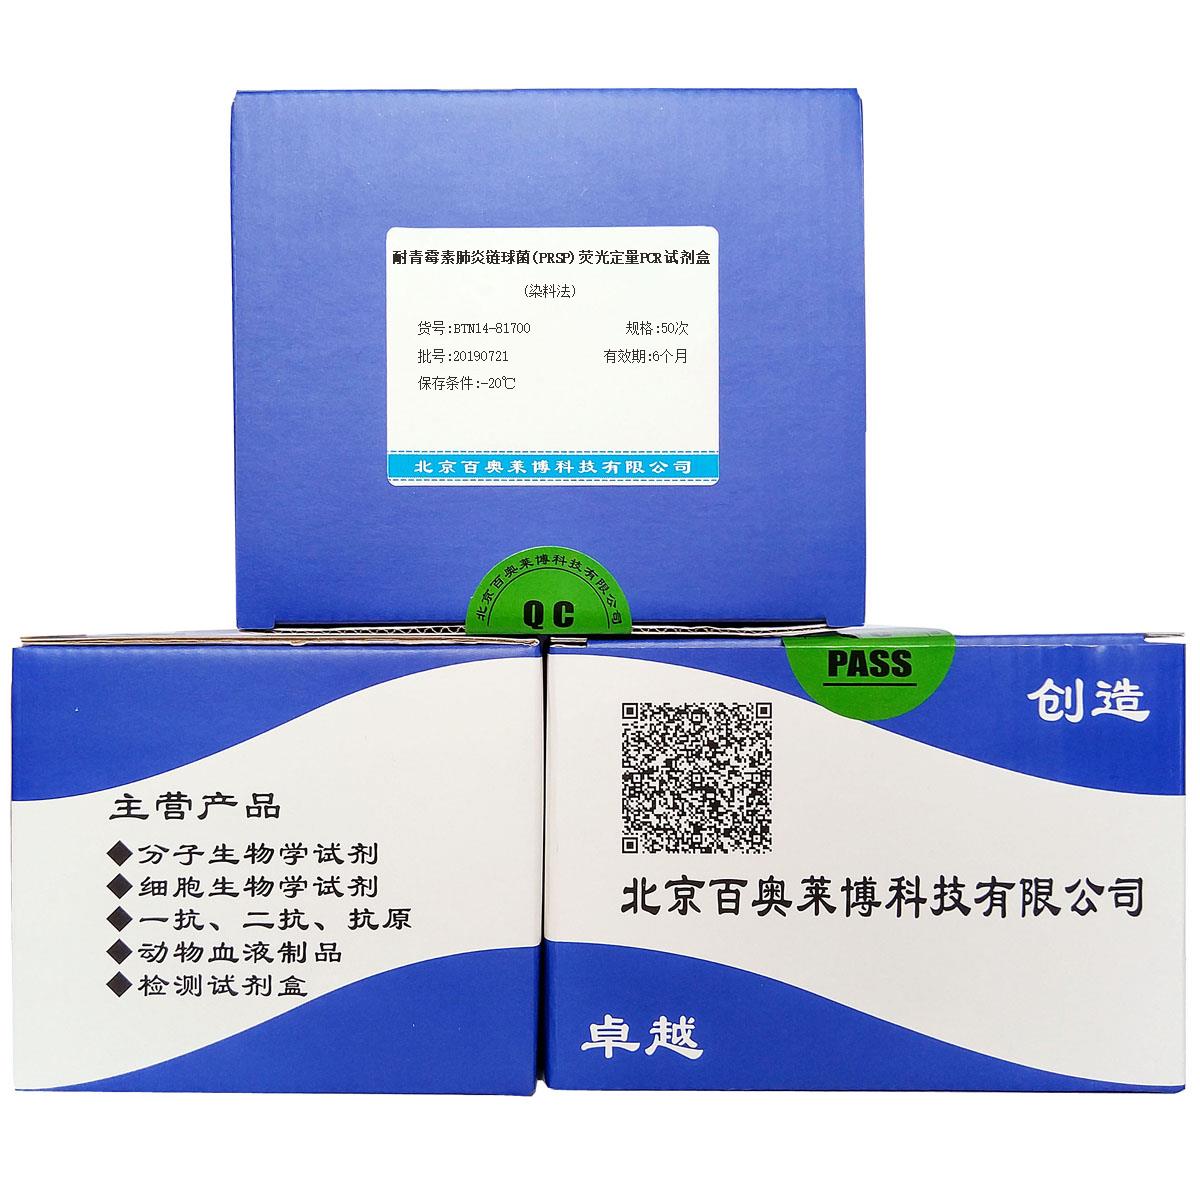 耐青霉素肺炎链球菌(PRSP)荧光定量PCR试剂盒(染料法)